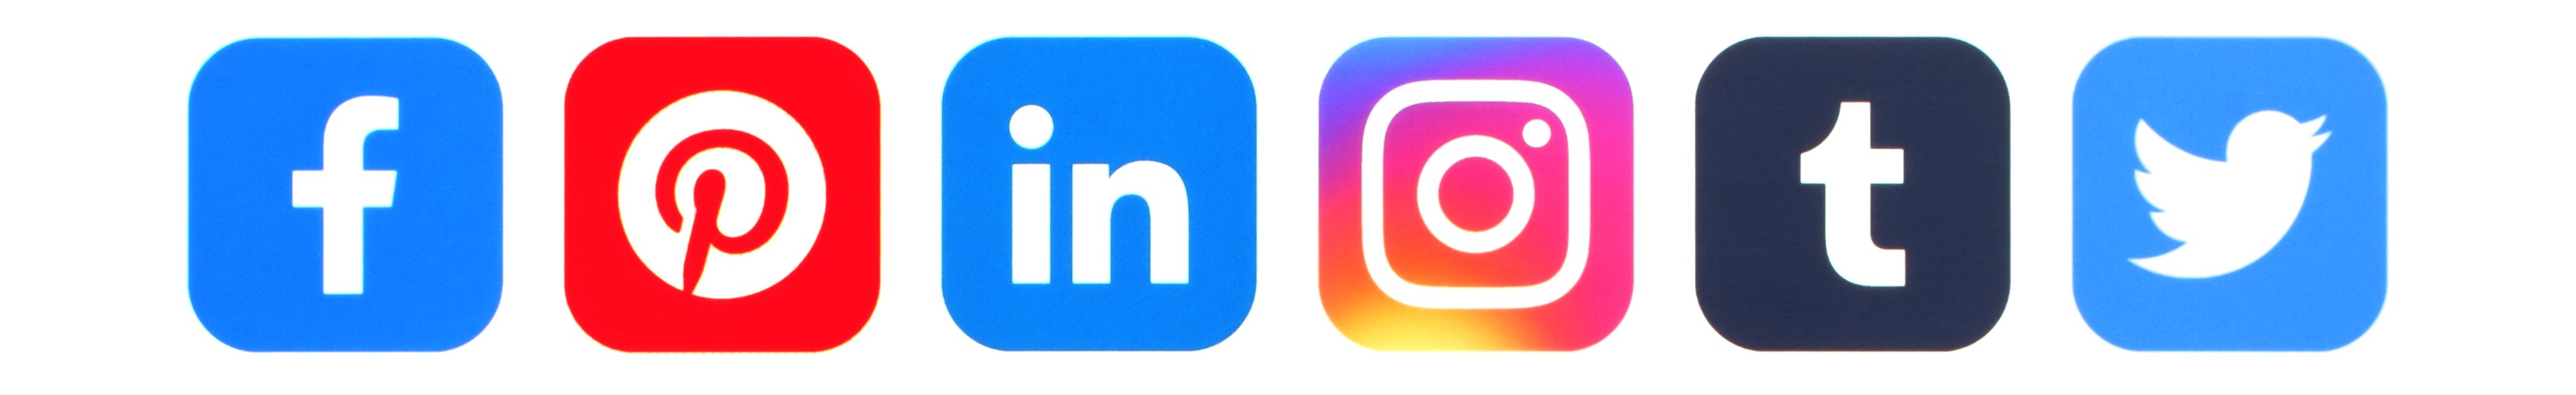 social media platform options